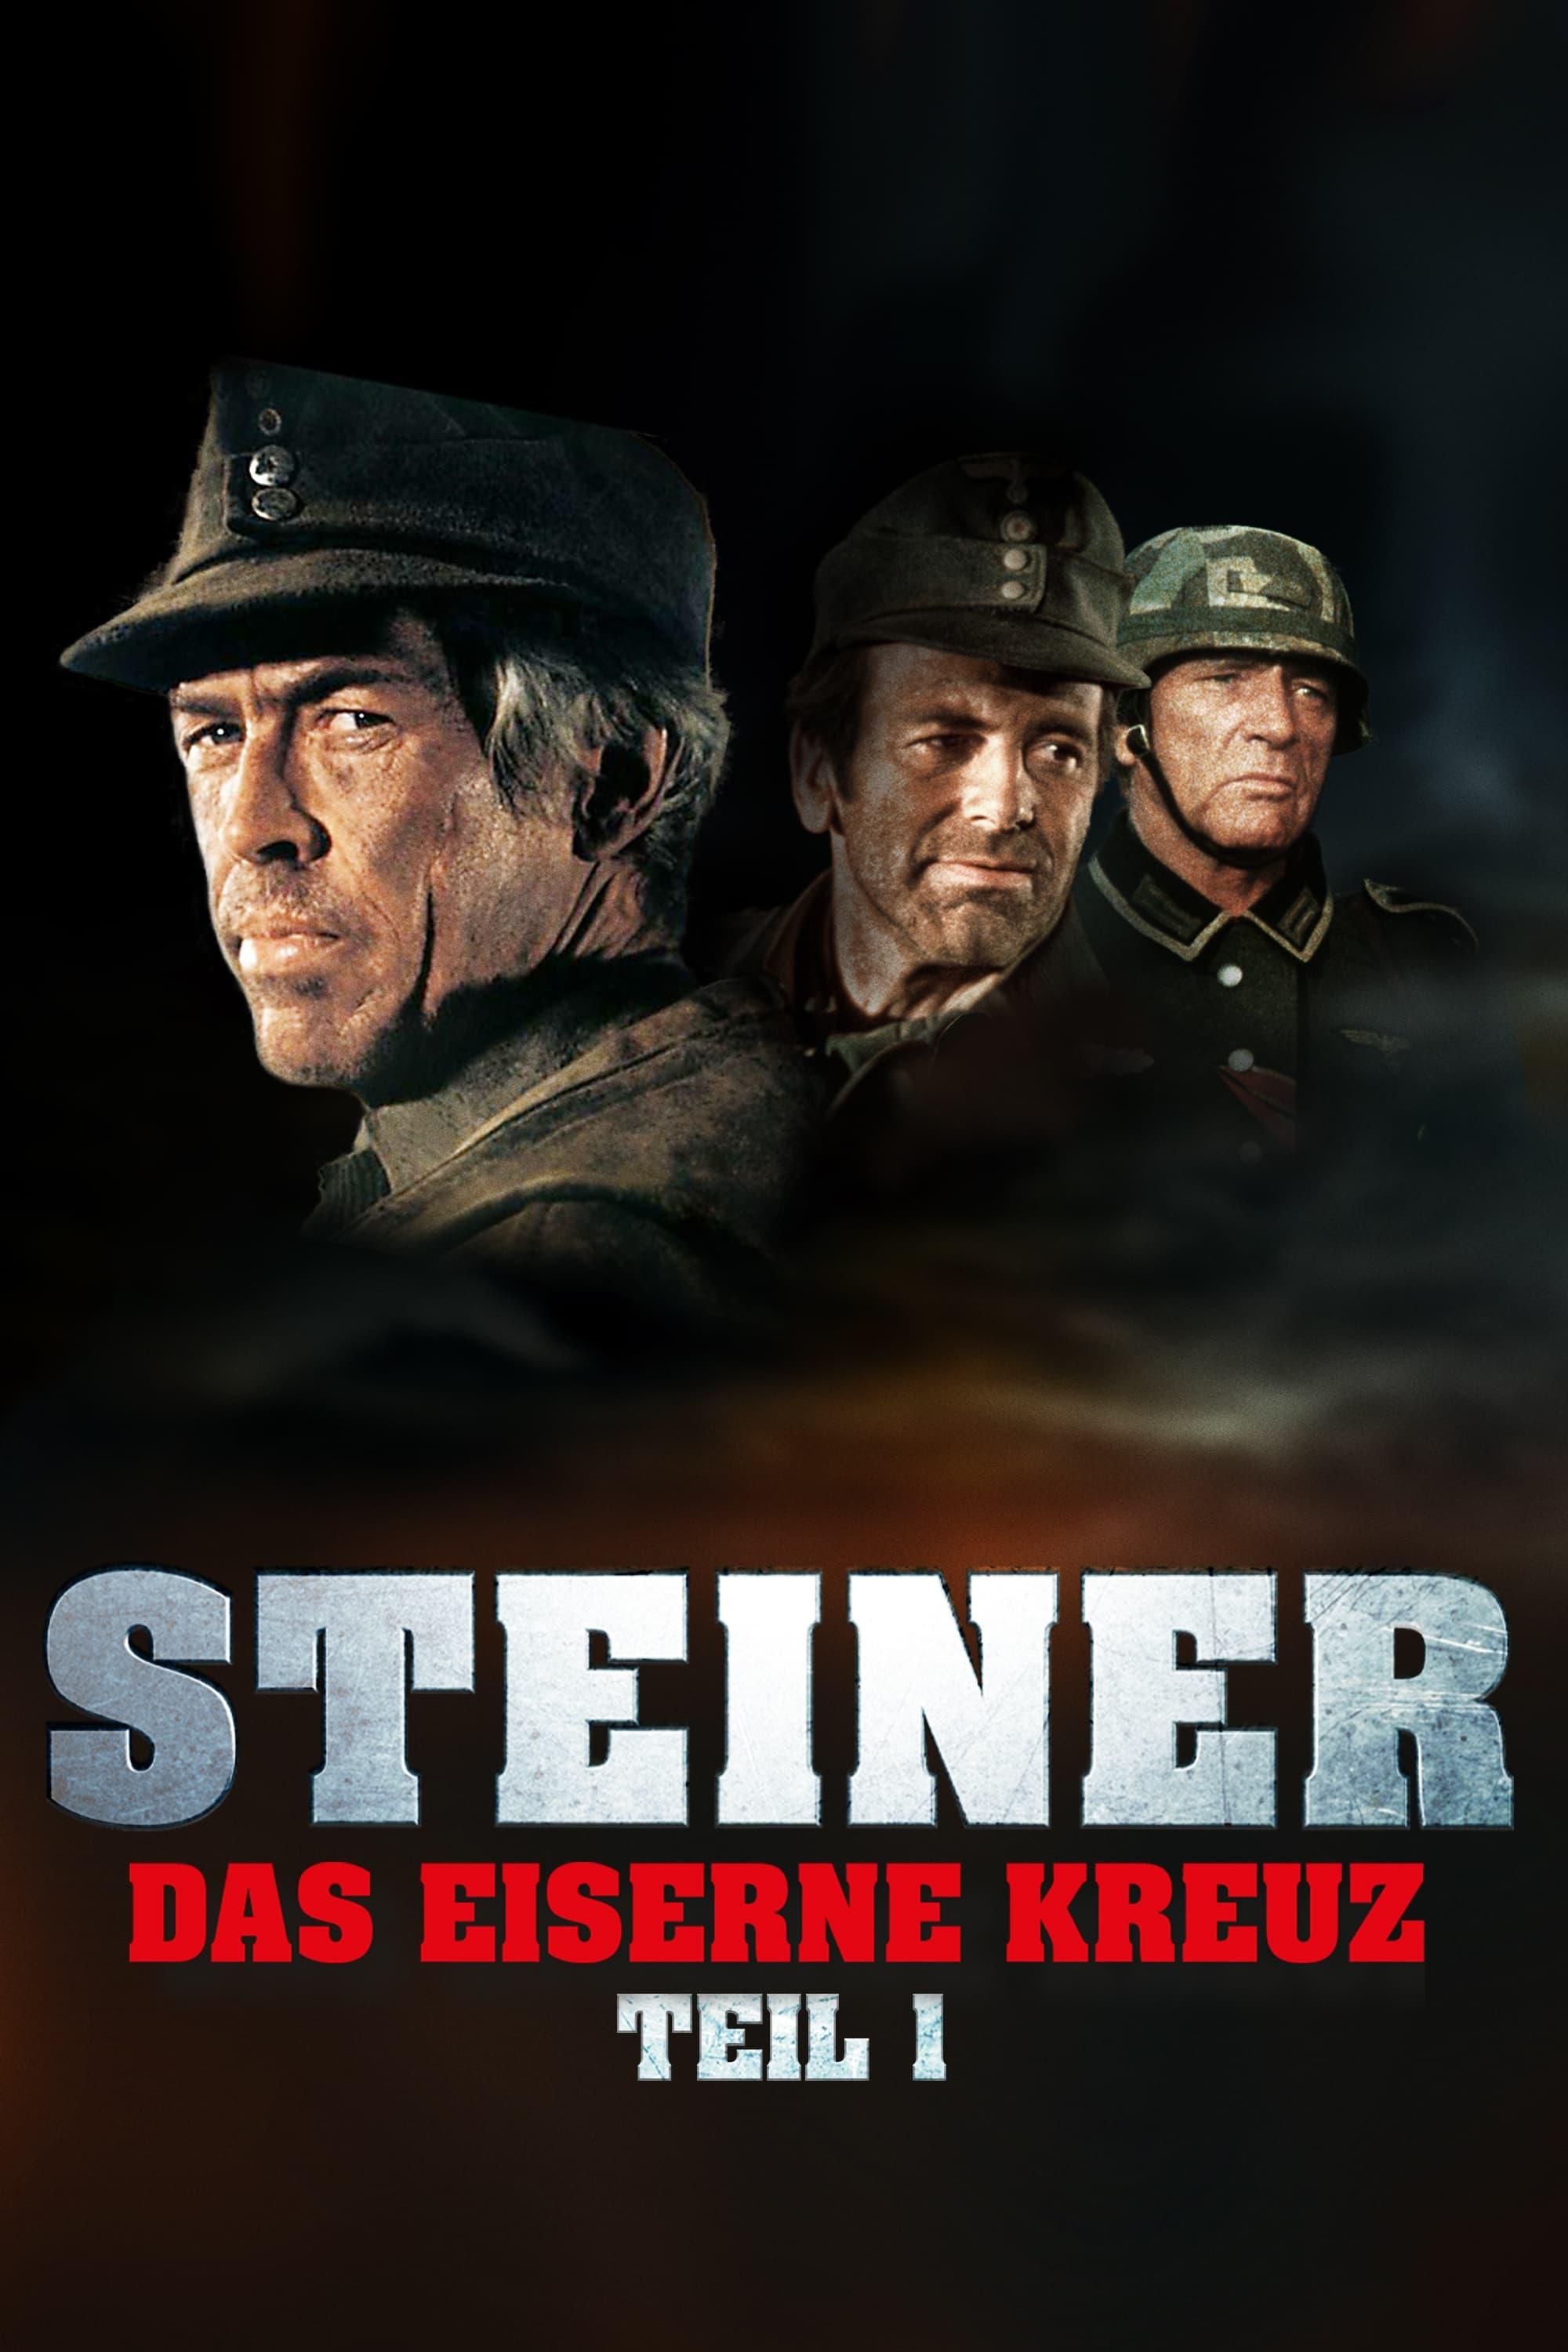 Steiner - Das Eiserne Kreuz poster